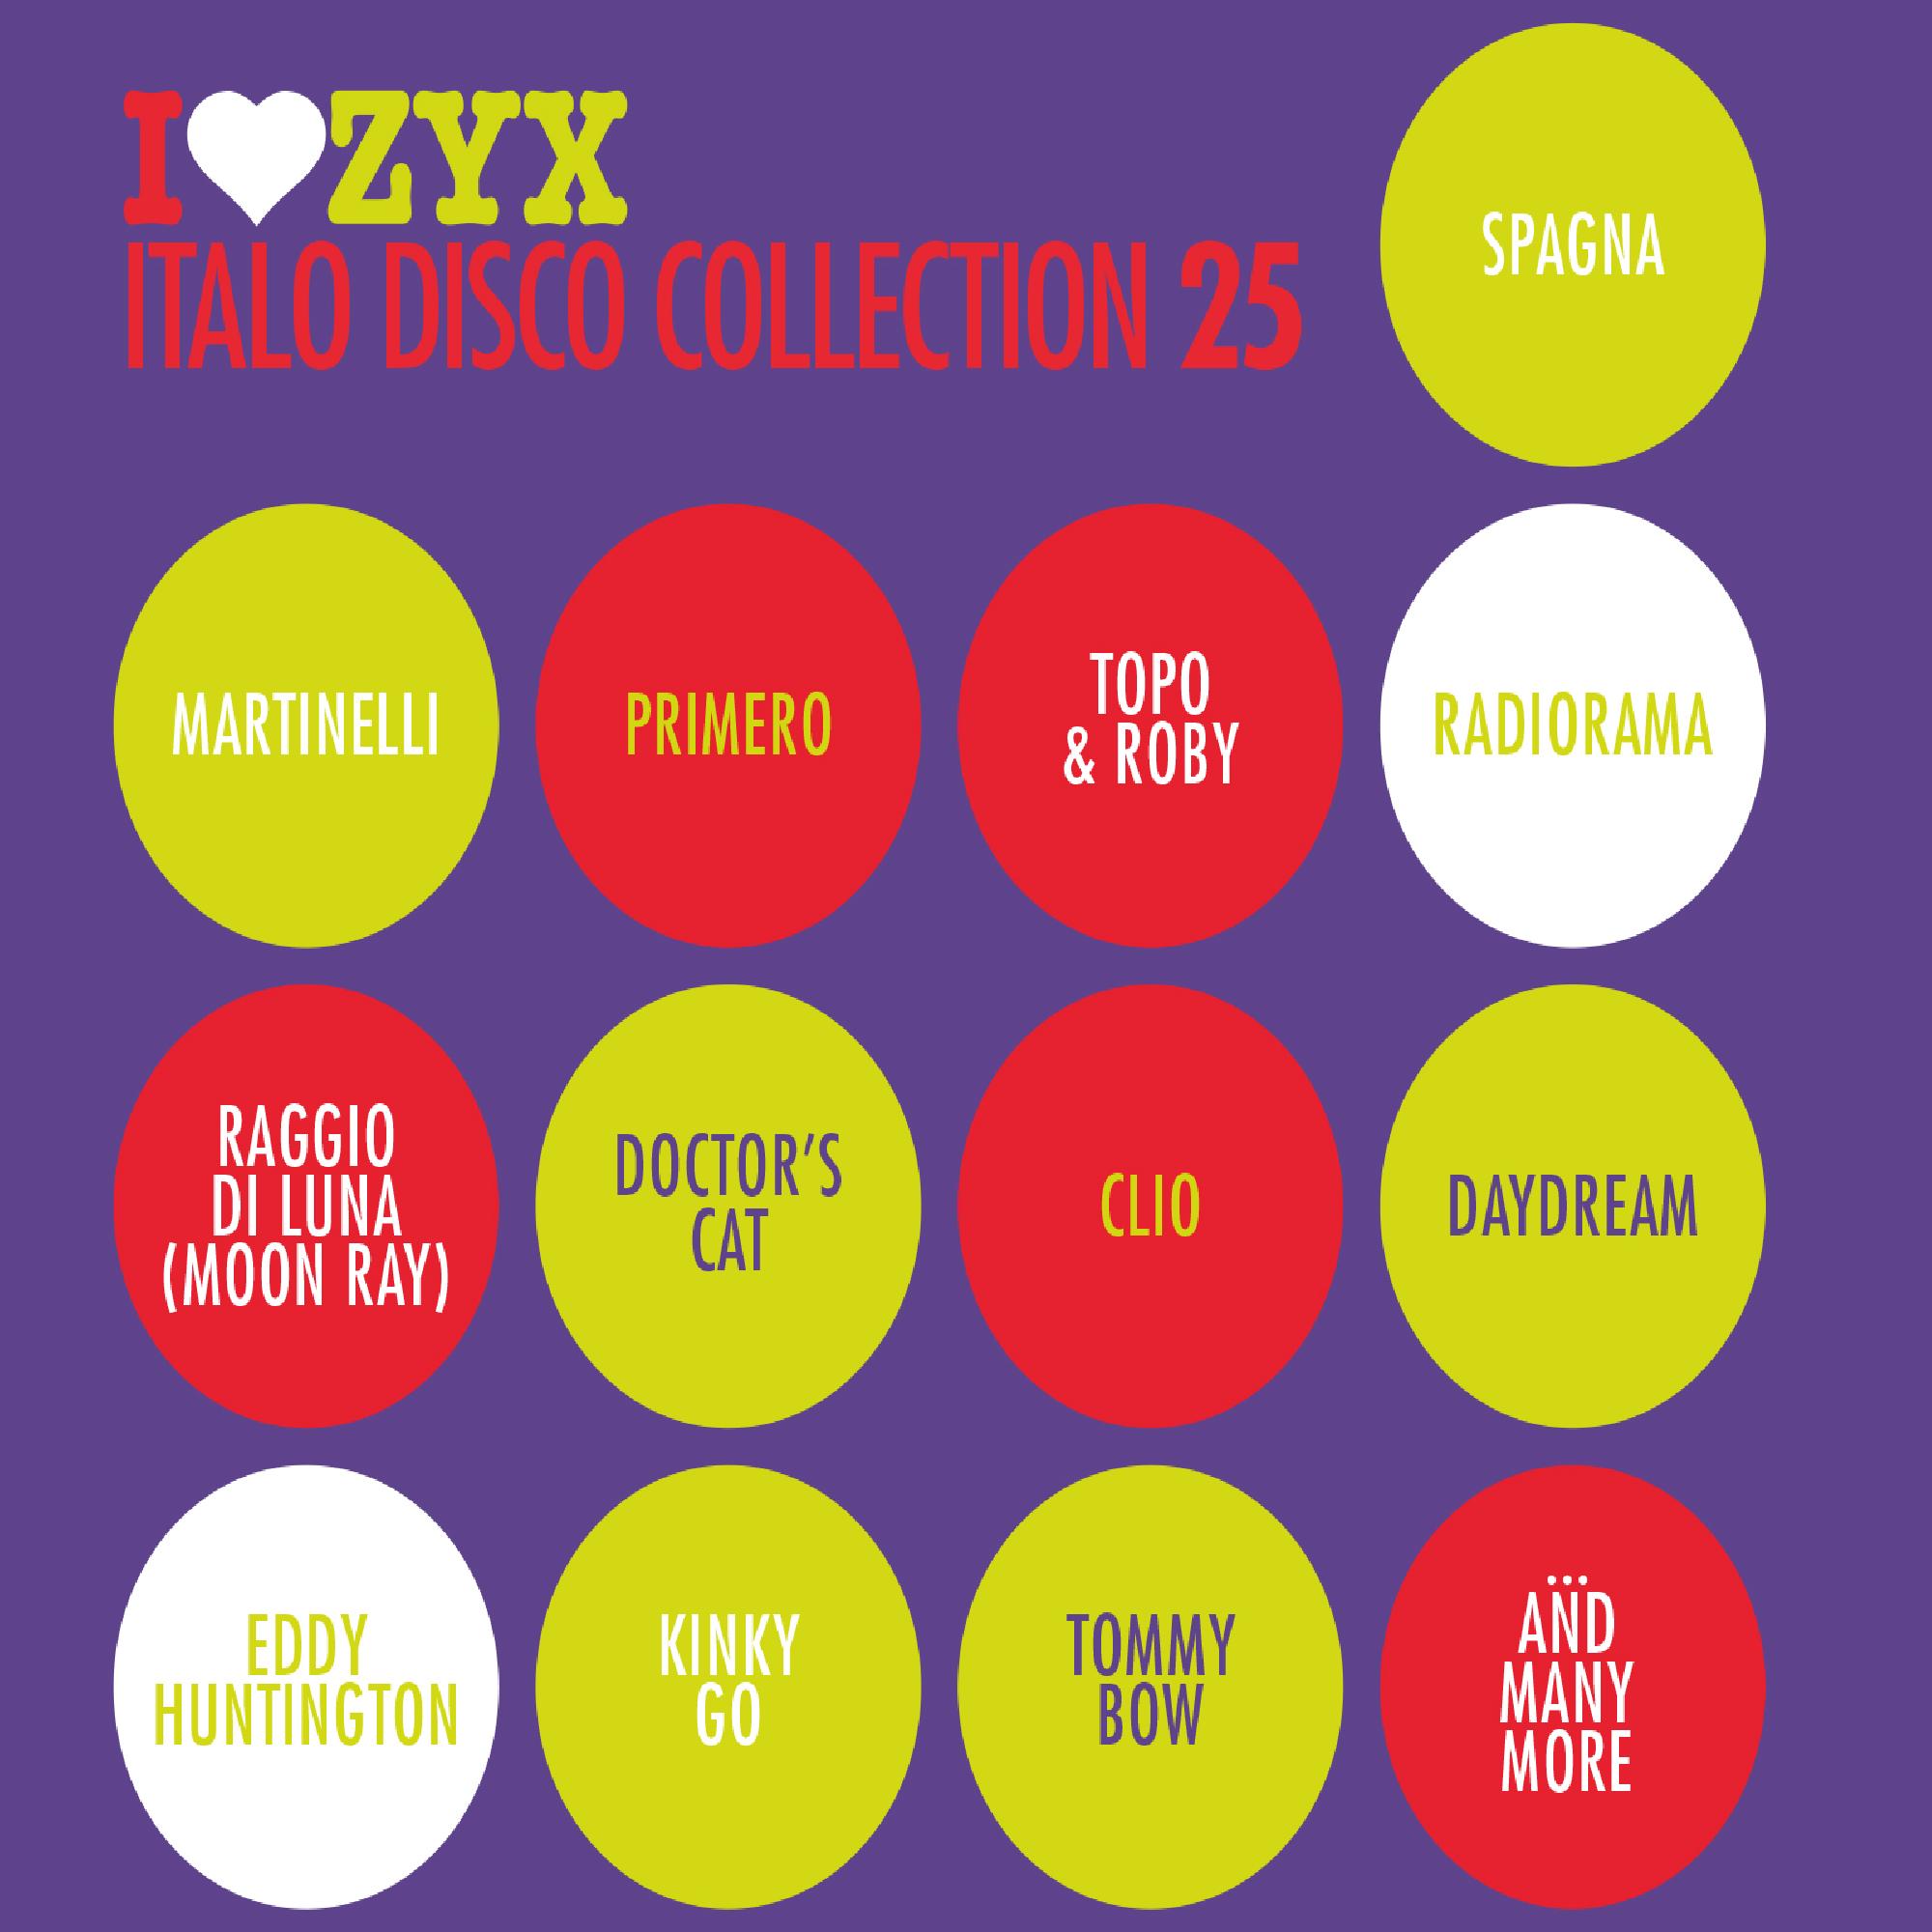 Italo disco collection